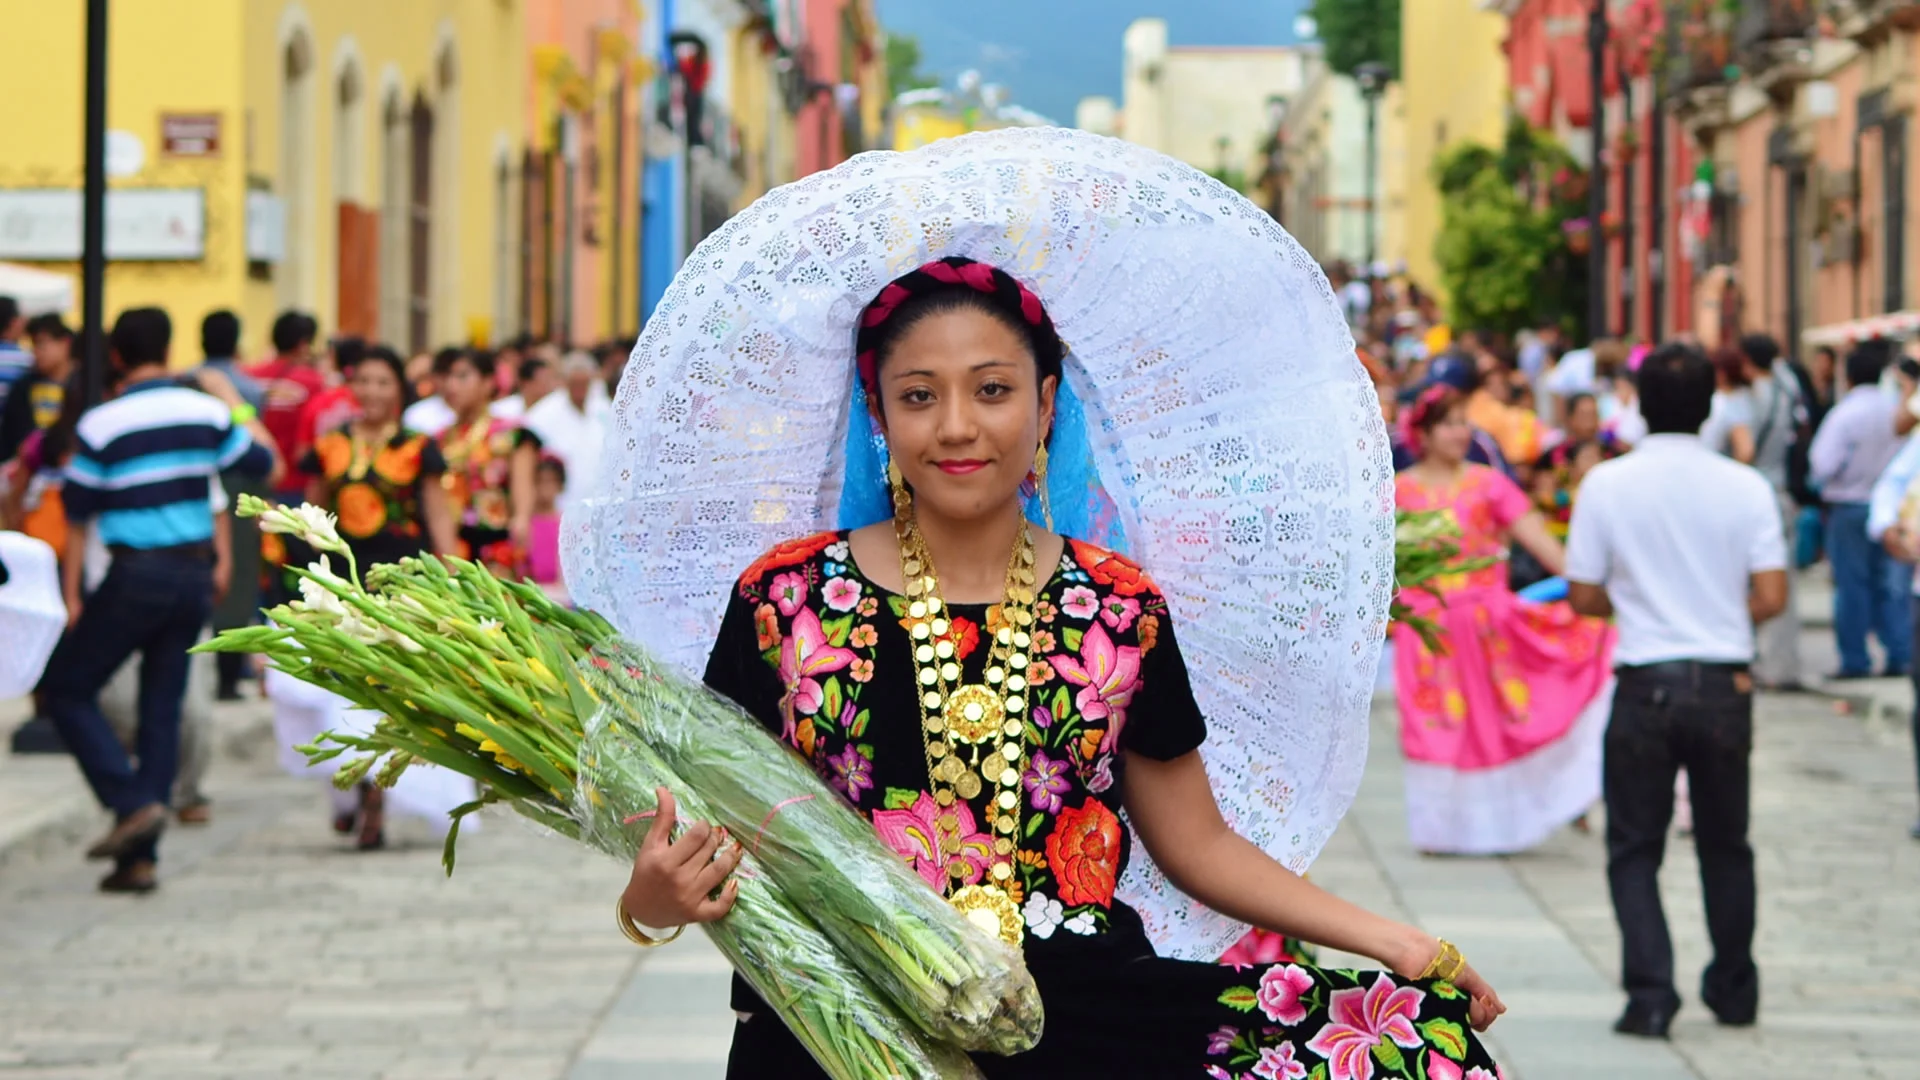 Vestit típic d'Oaxaca